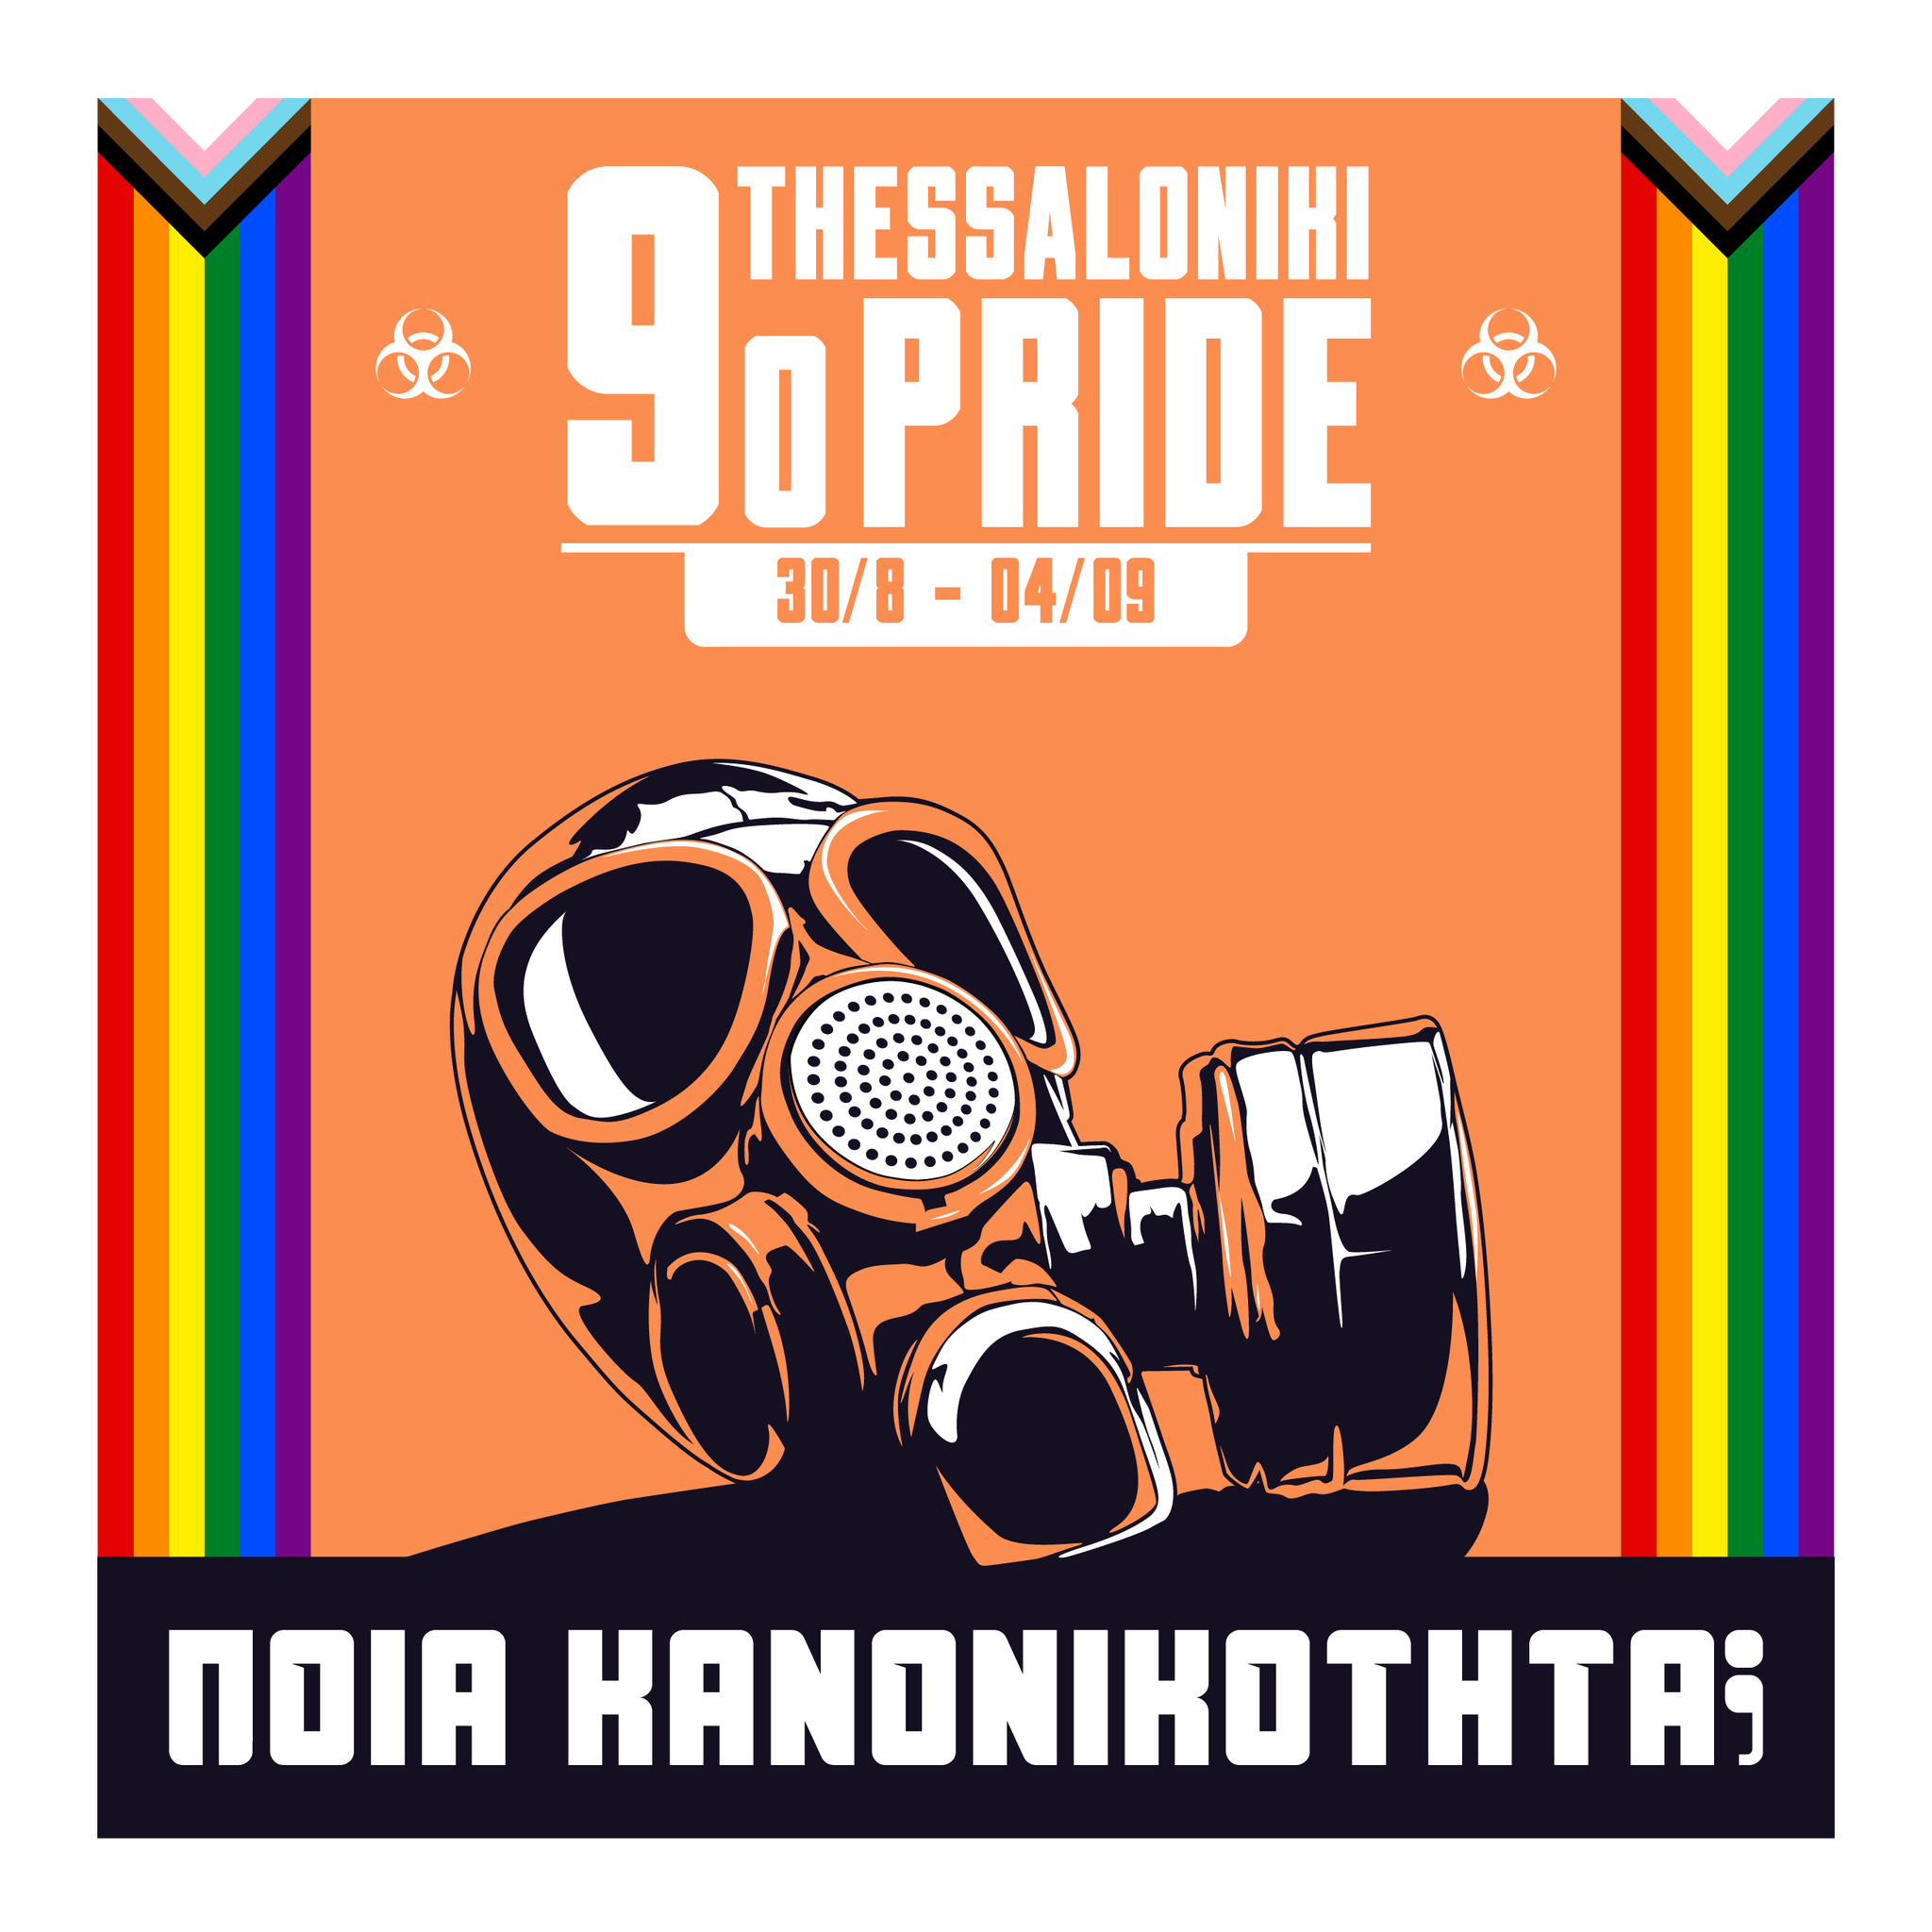 Ανακοινώθηκε το 9ο Thessaloniki Pride 2021 "Ποια κανονικότητα;"